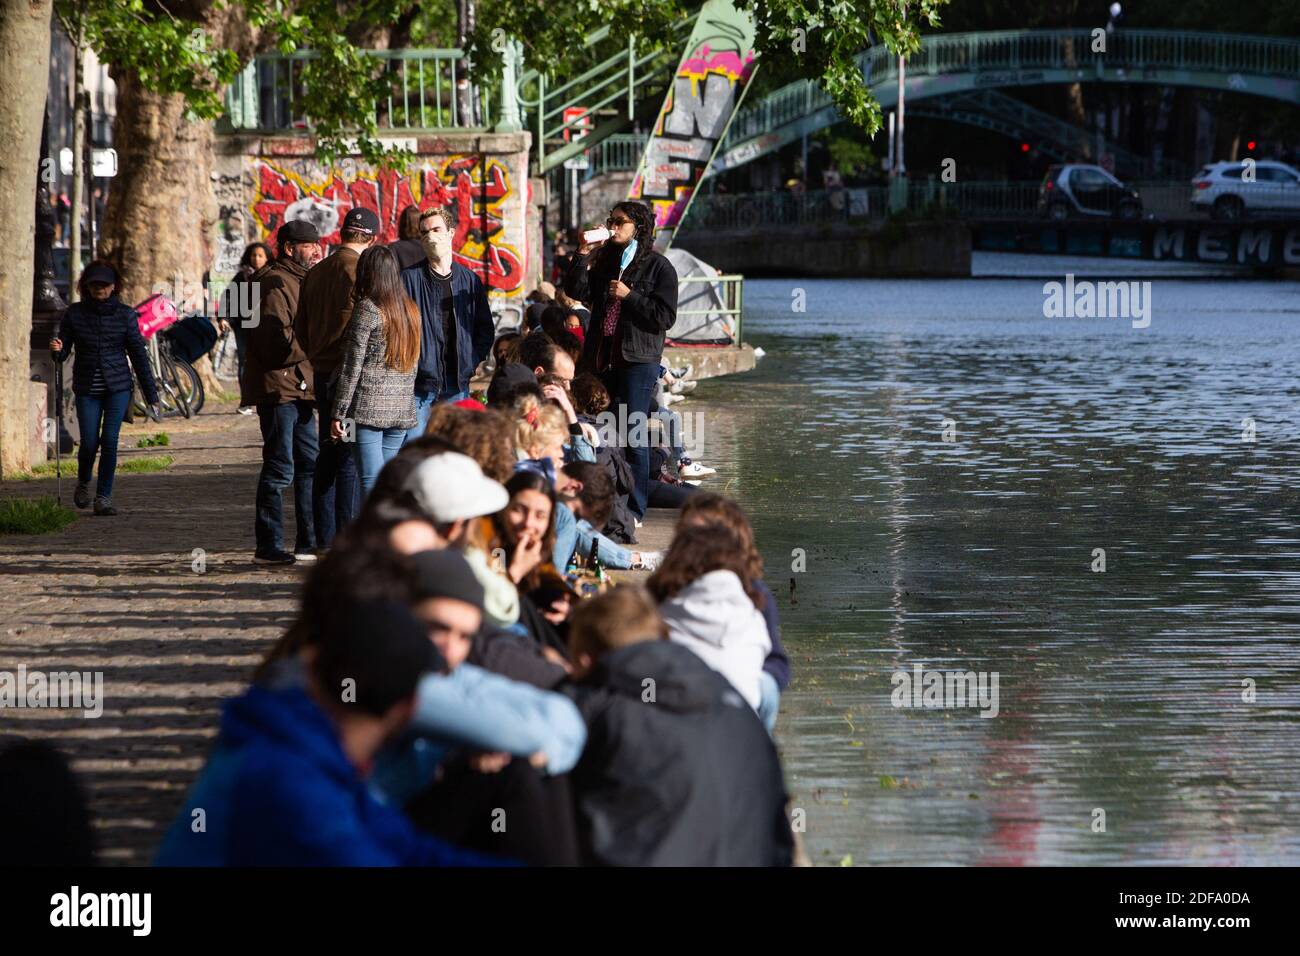 Am 11. Mai 2020, am ersten Tag der Lockerung der 55-tägigen Sperrmaßnahmen Frankreichs, um die Ausbreitung der durch das neue Coronavirus verursachten COVID-19-Pandemie einzudämmen, treffen sich Menschen am Ufer des Canal Saint Martin in Paris. Foto von Raphael Lafargue/ABACAPRESS.COM Stockfoto